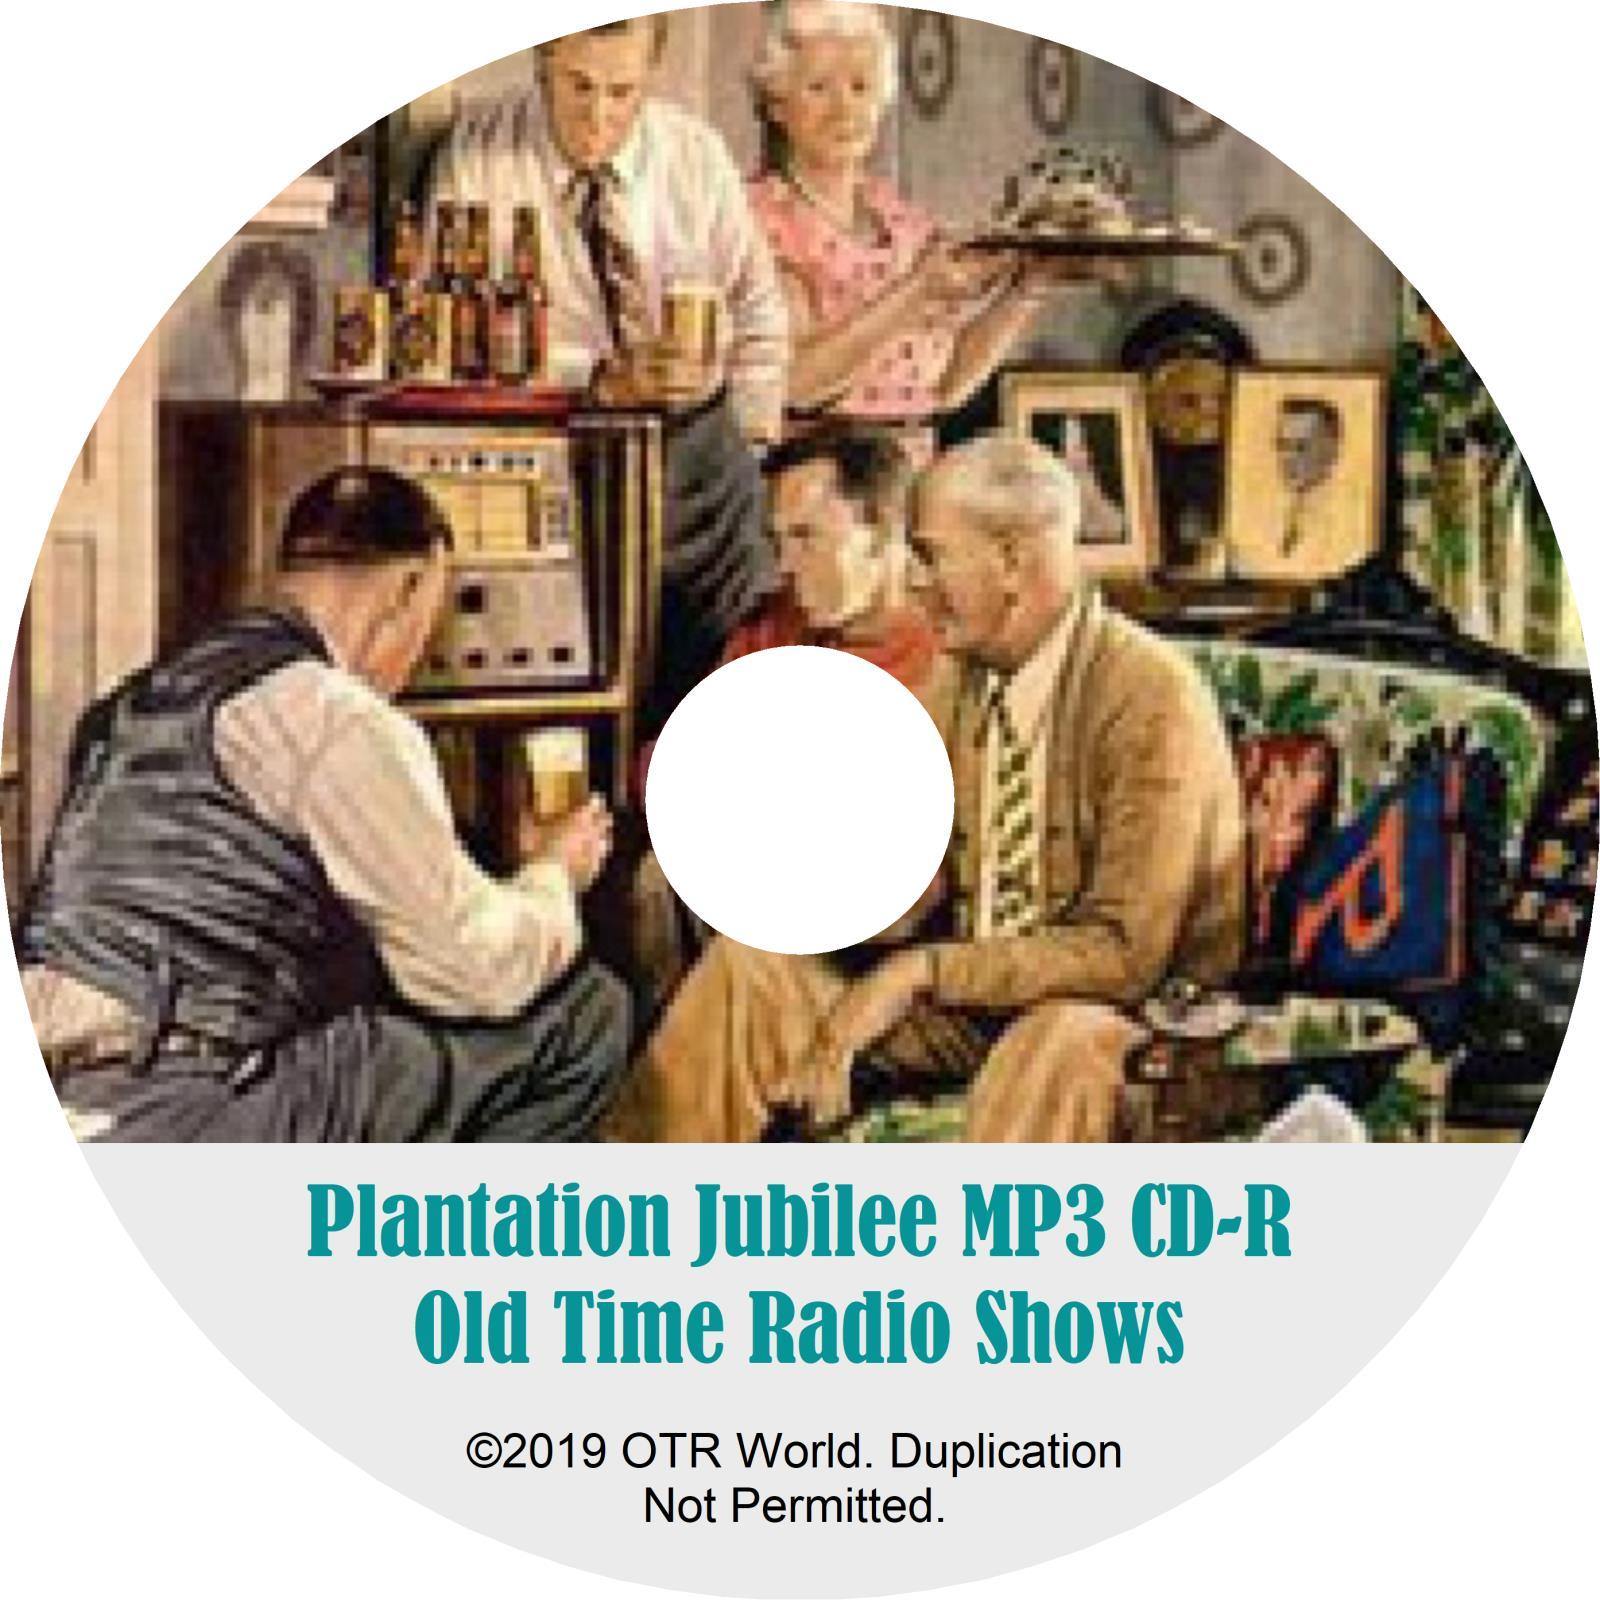 Plantation Jubilee OTR Old Time Radio Shows MP3 On CD 6 Episodes - OTR World